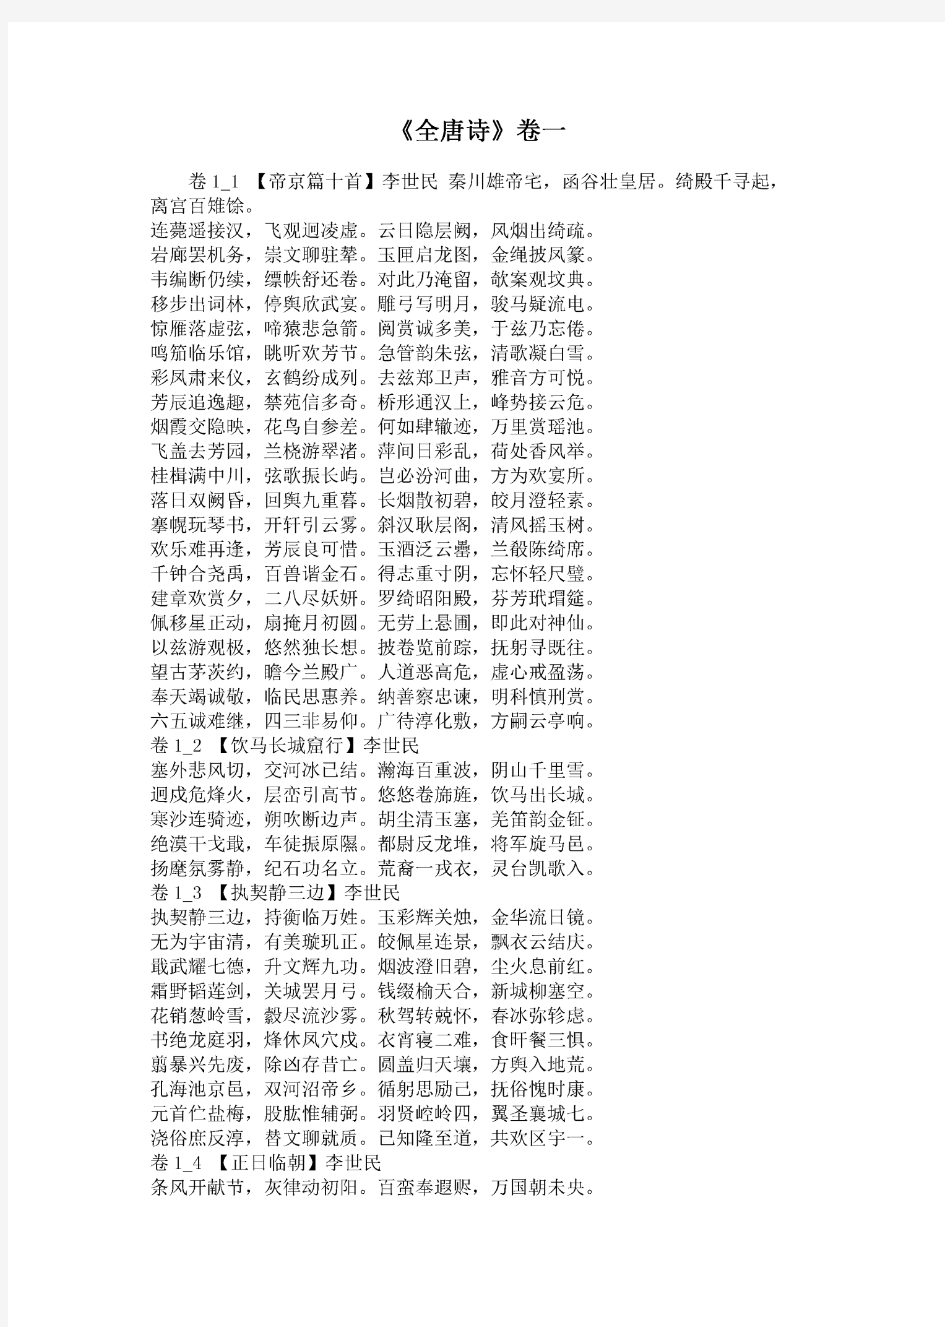 《全唐诗》卷一.pdf